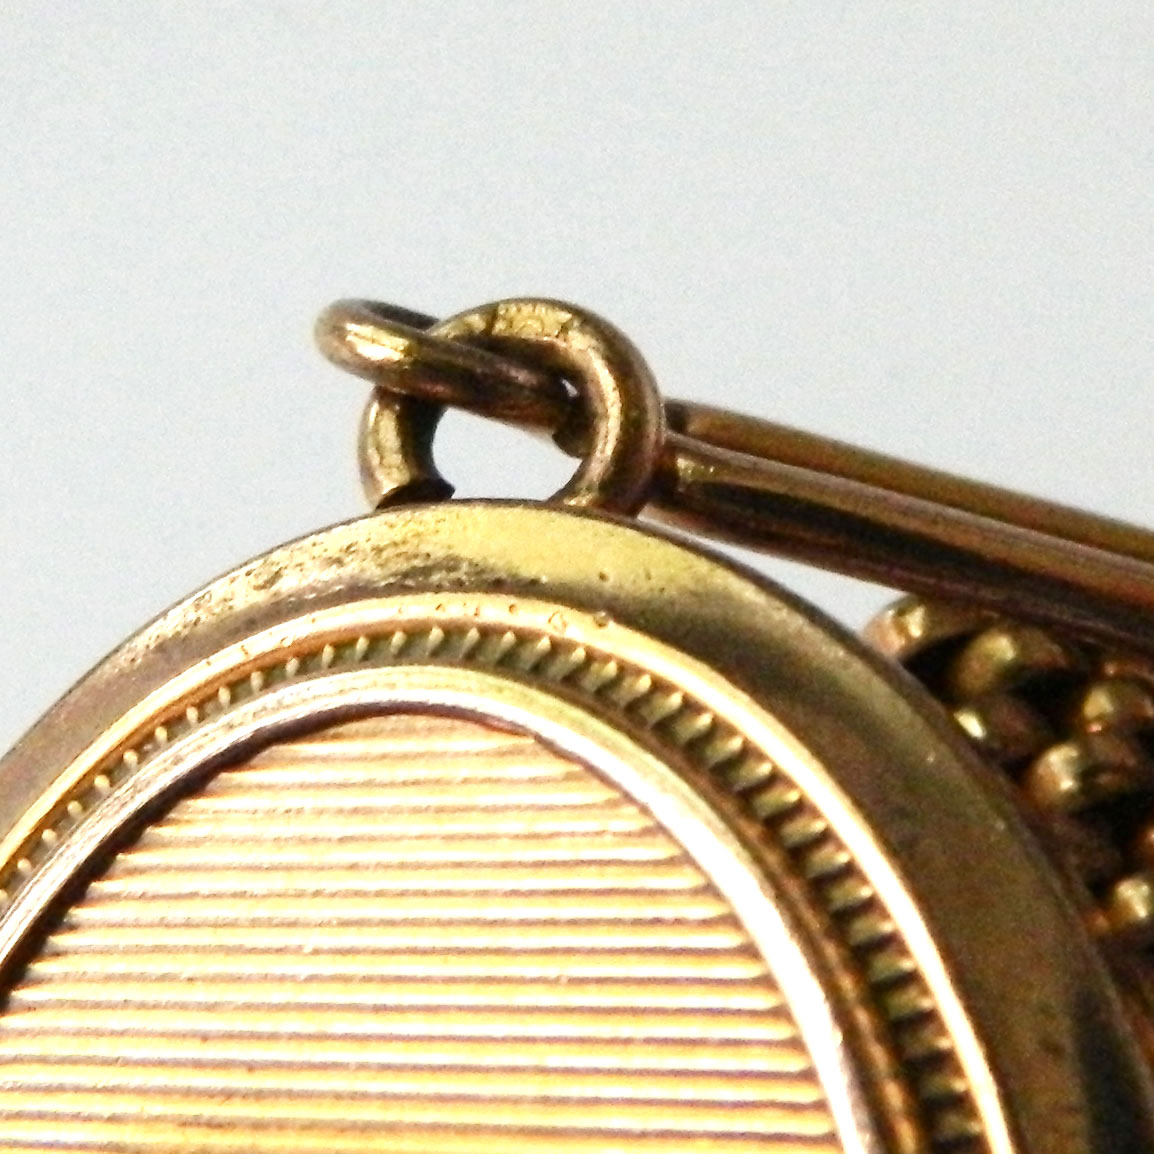 antique locket